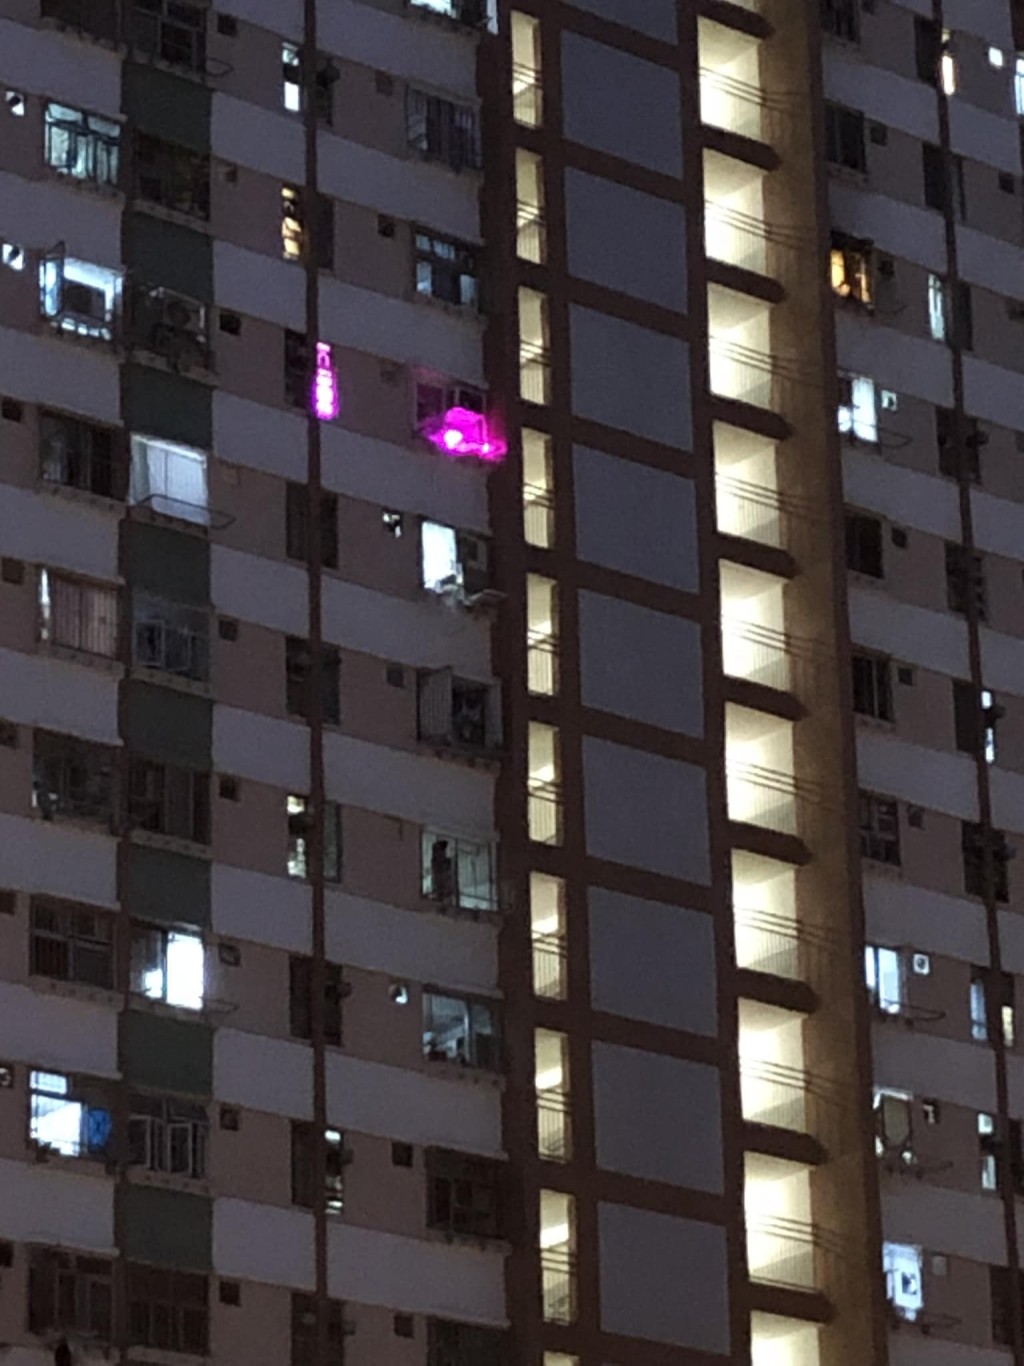 從網上瘋傳的相片可見單位亮起誘惑的紫色螢光。